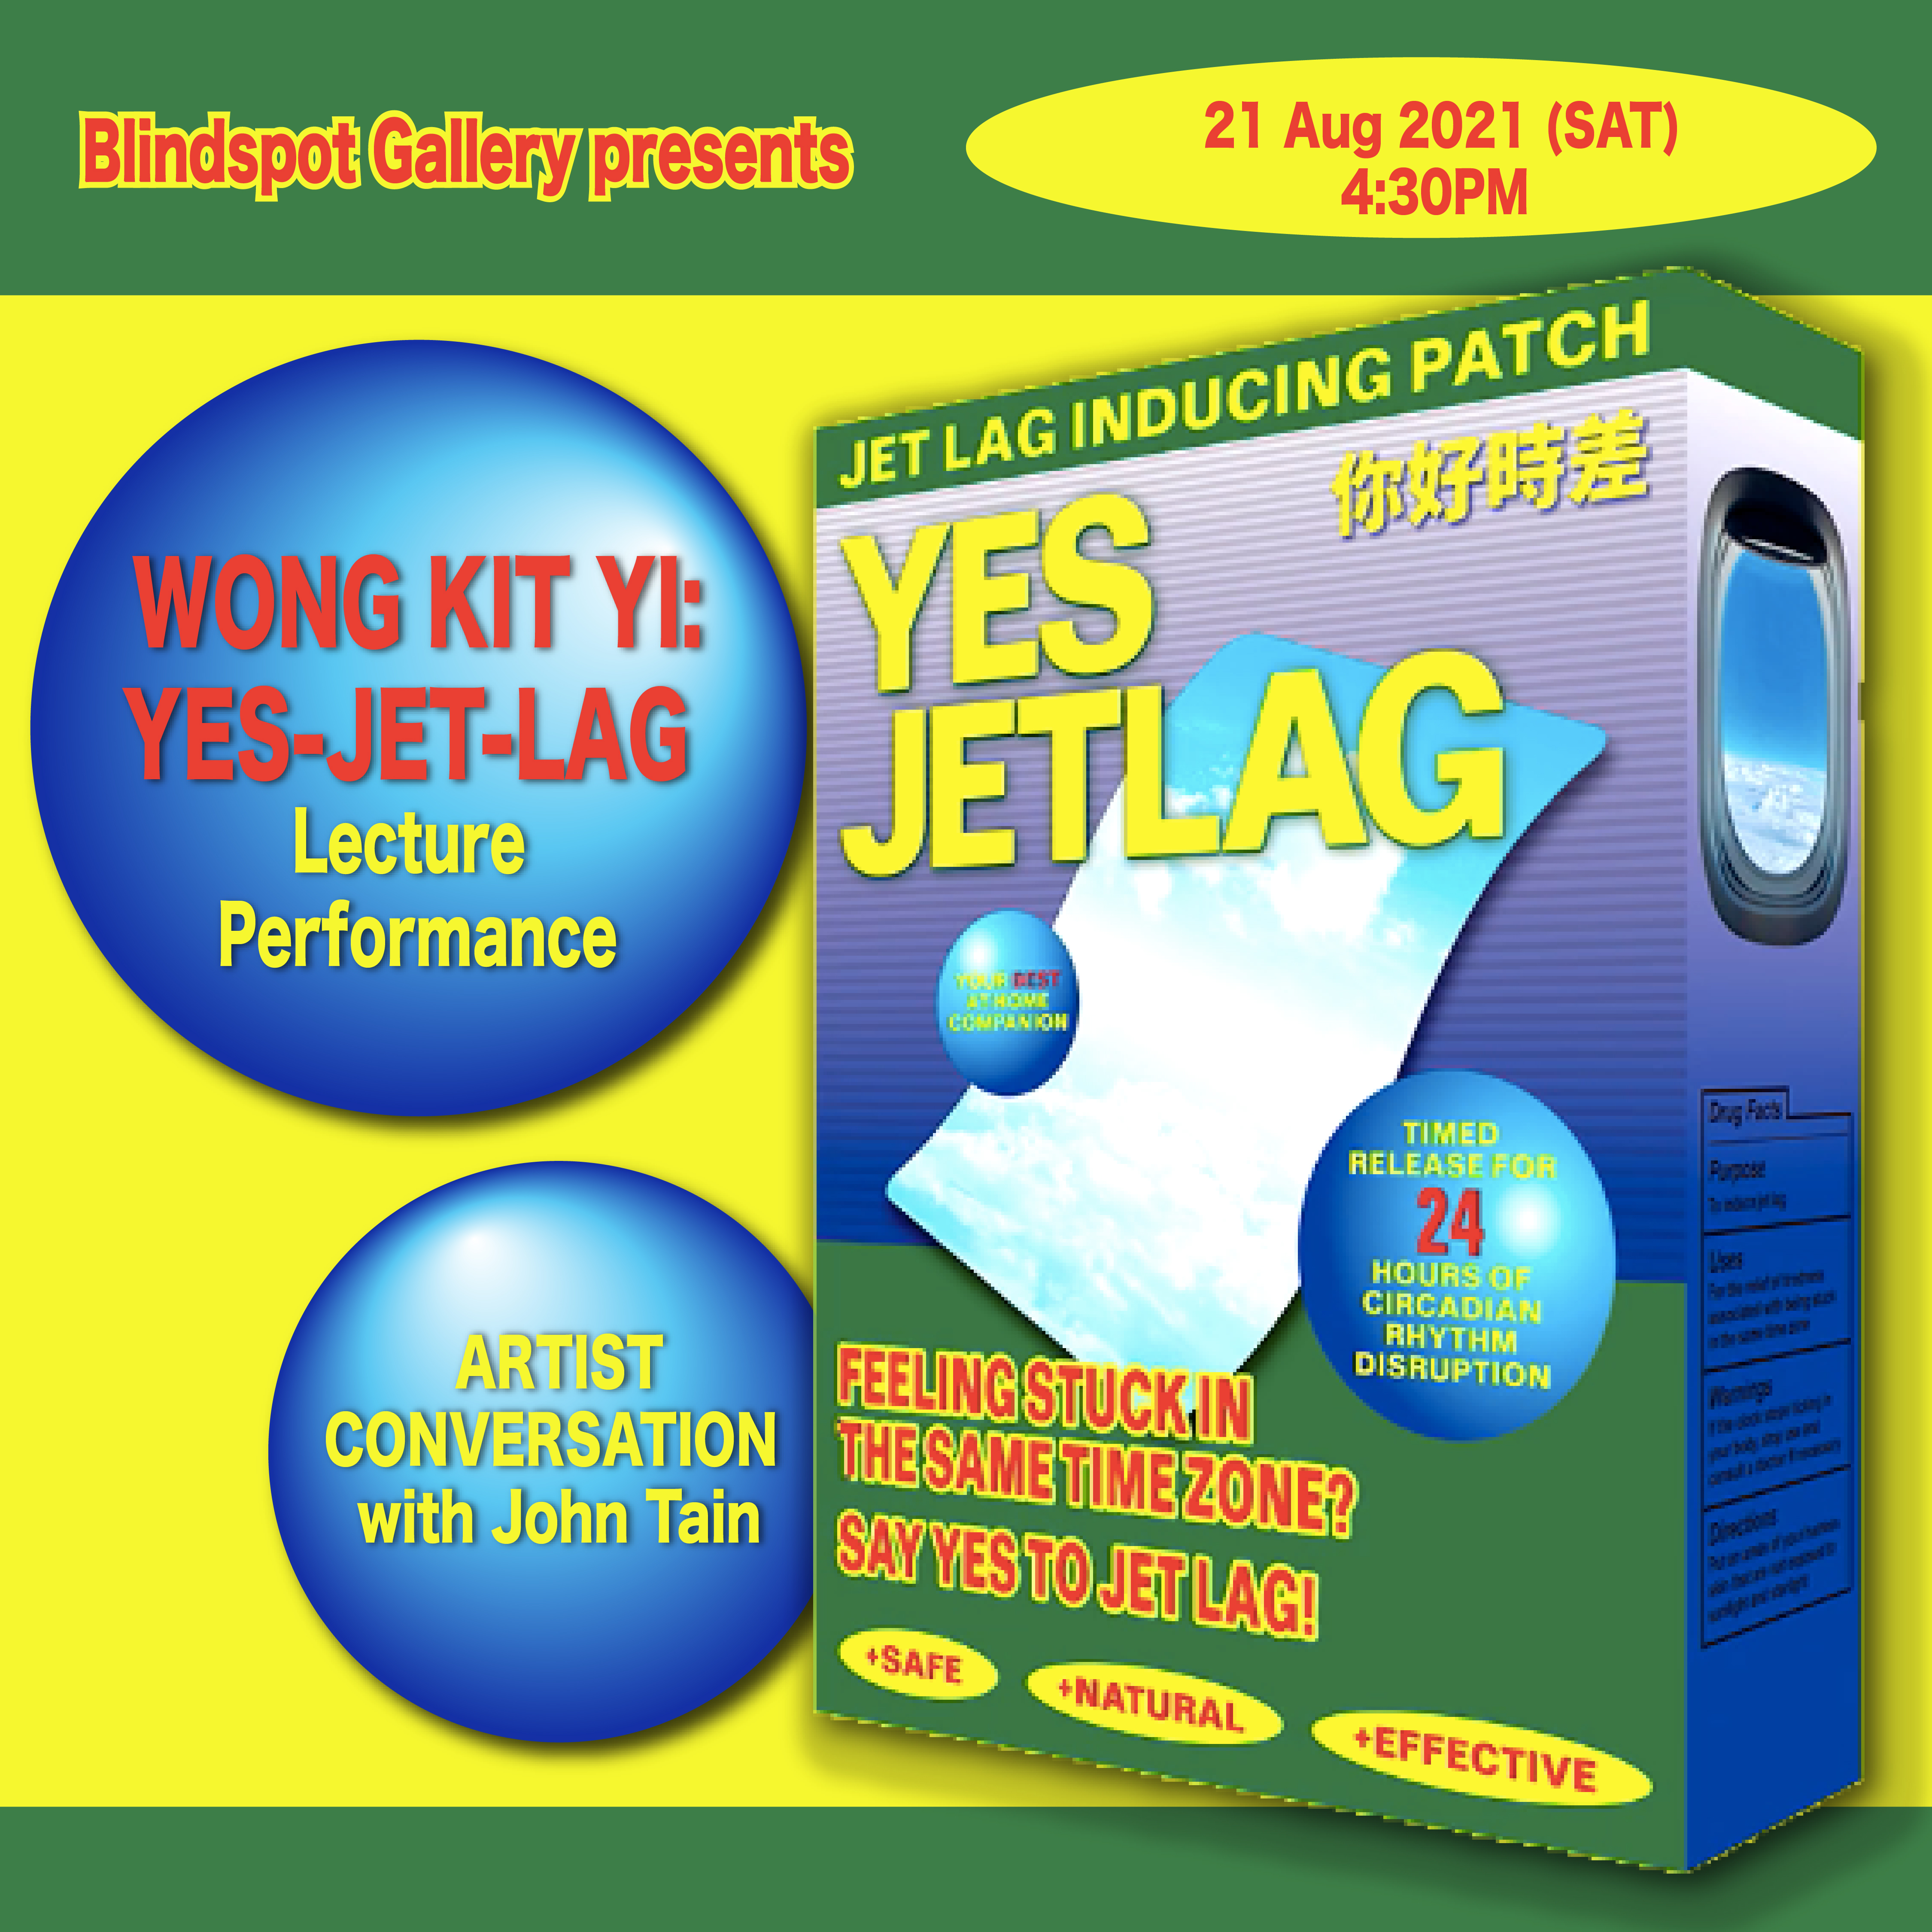 Yes-Jet-Lag (formula 2.0) Karaoke Lecture Performance by Wong Kit Yi